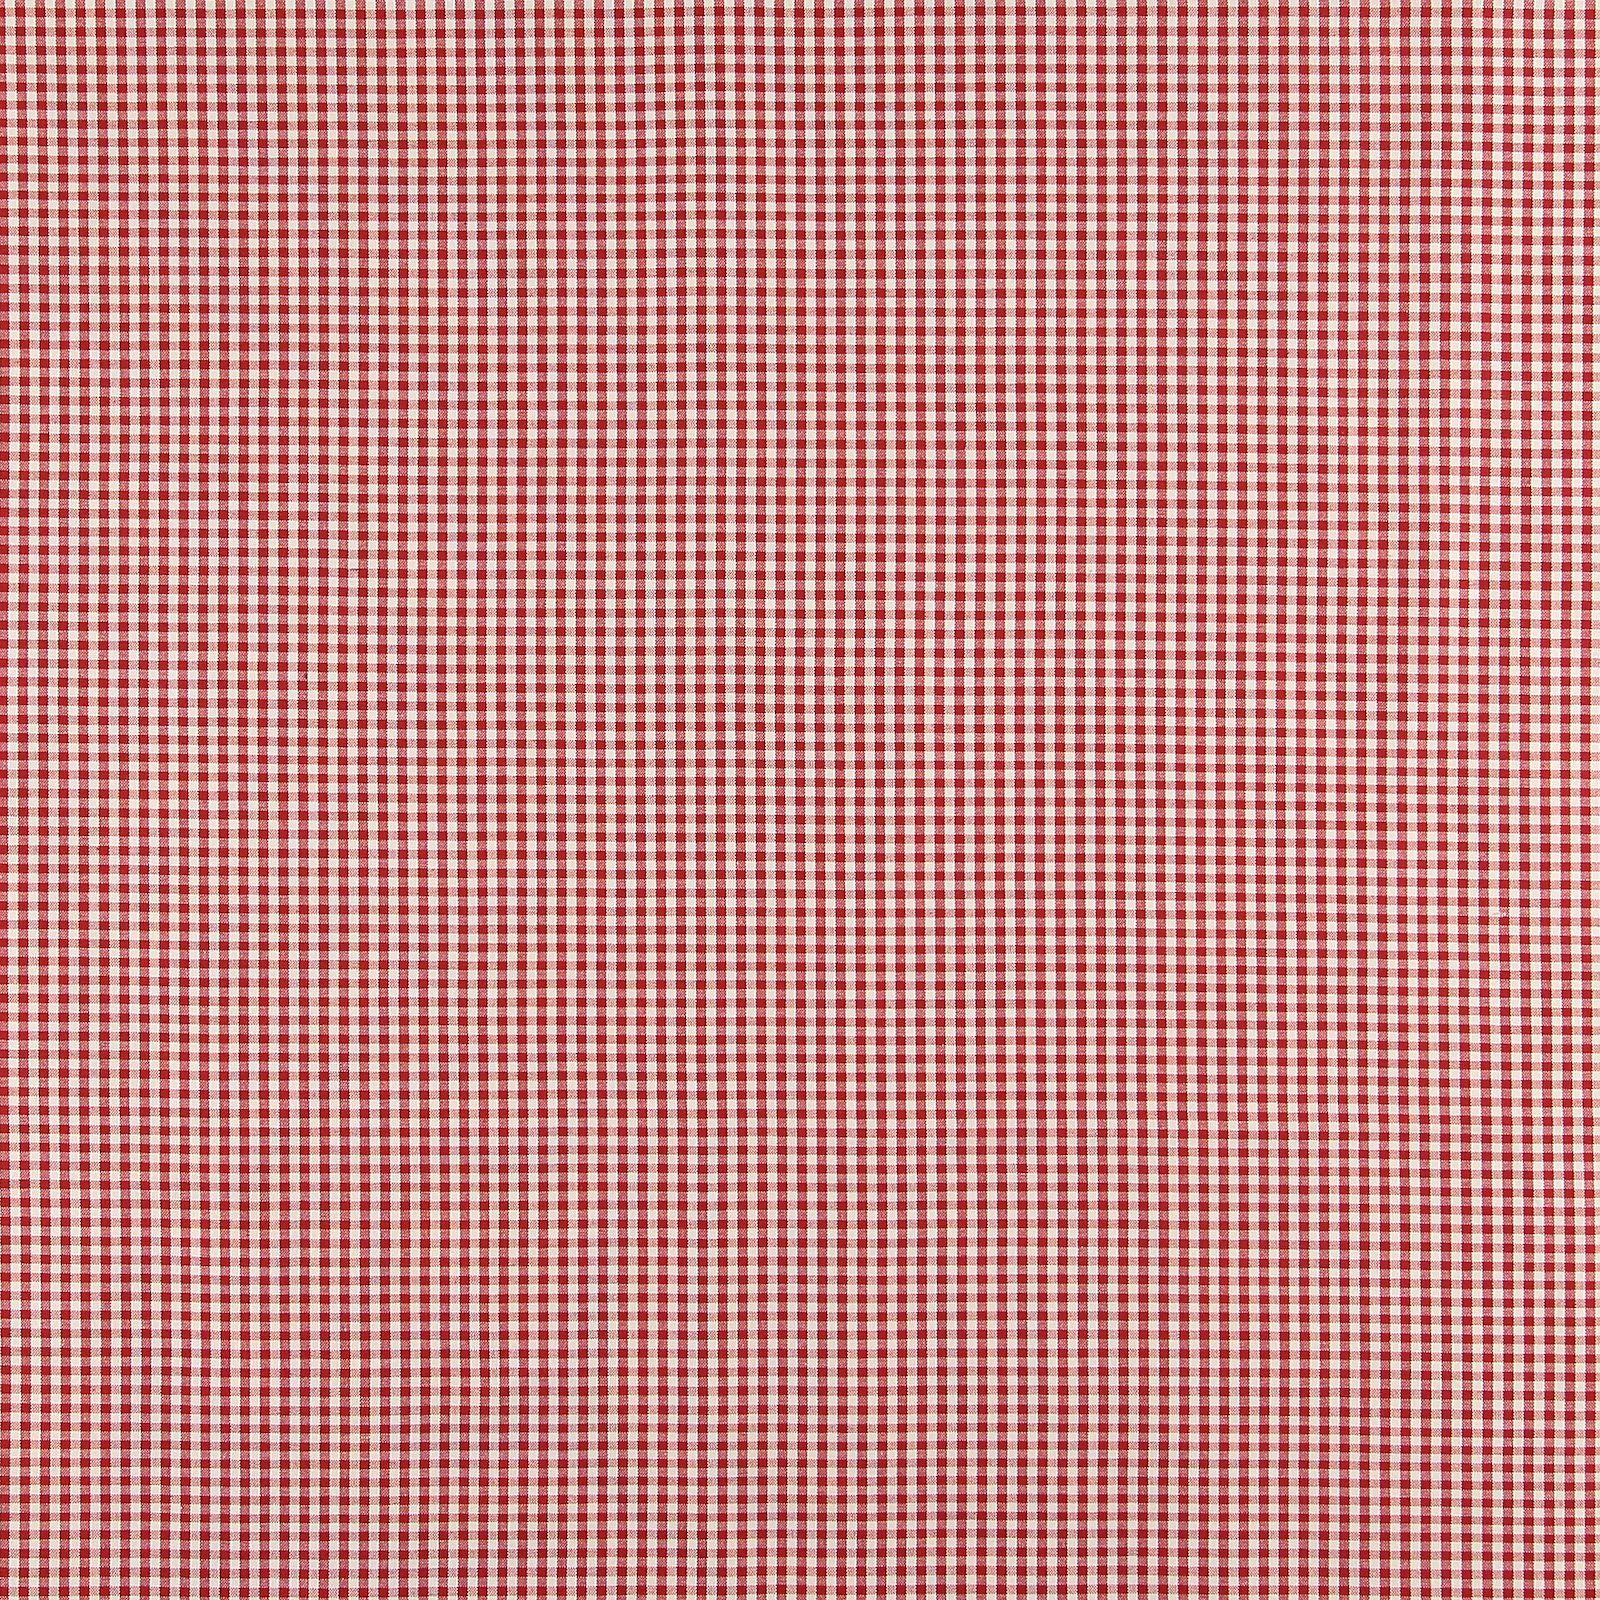 Baumwolle, rot/weiß kariert garngefärbt 810091_pack_sp